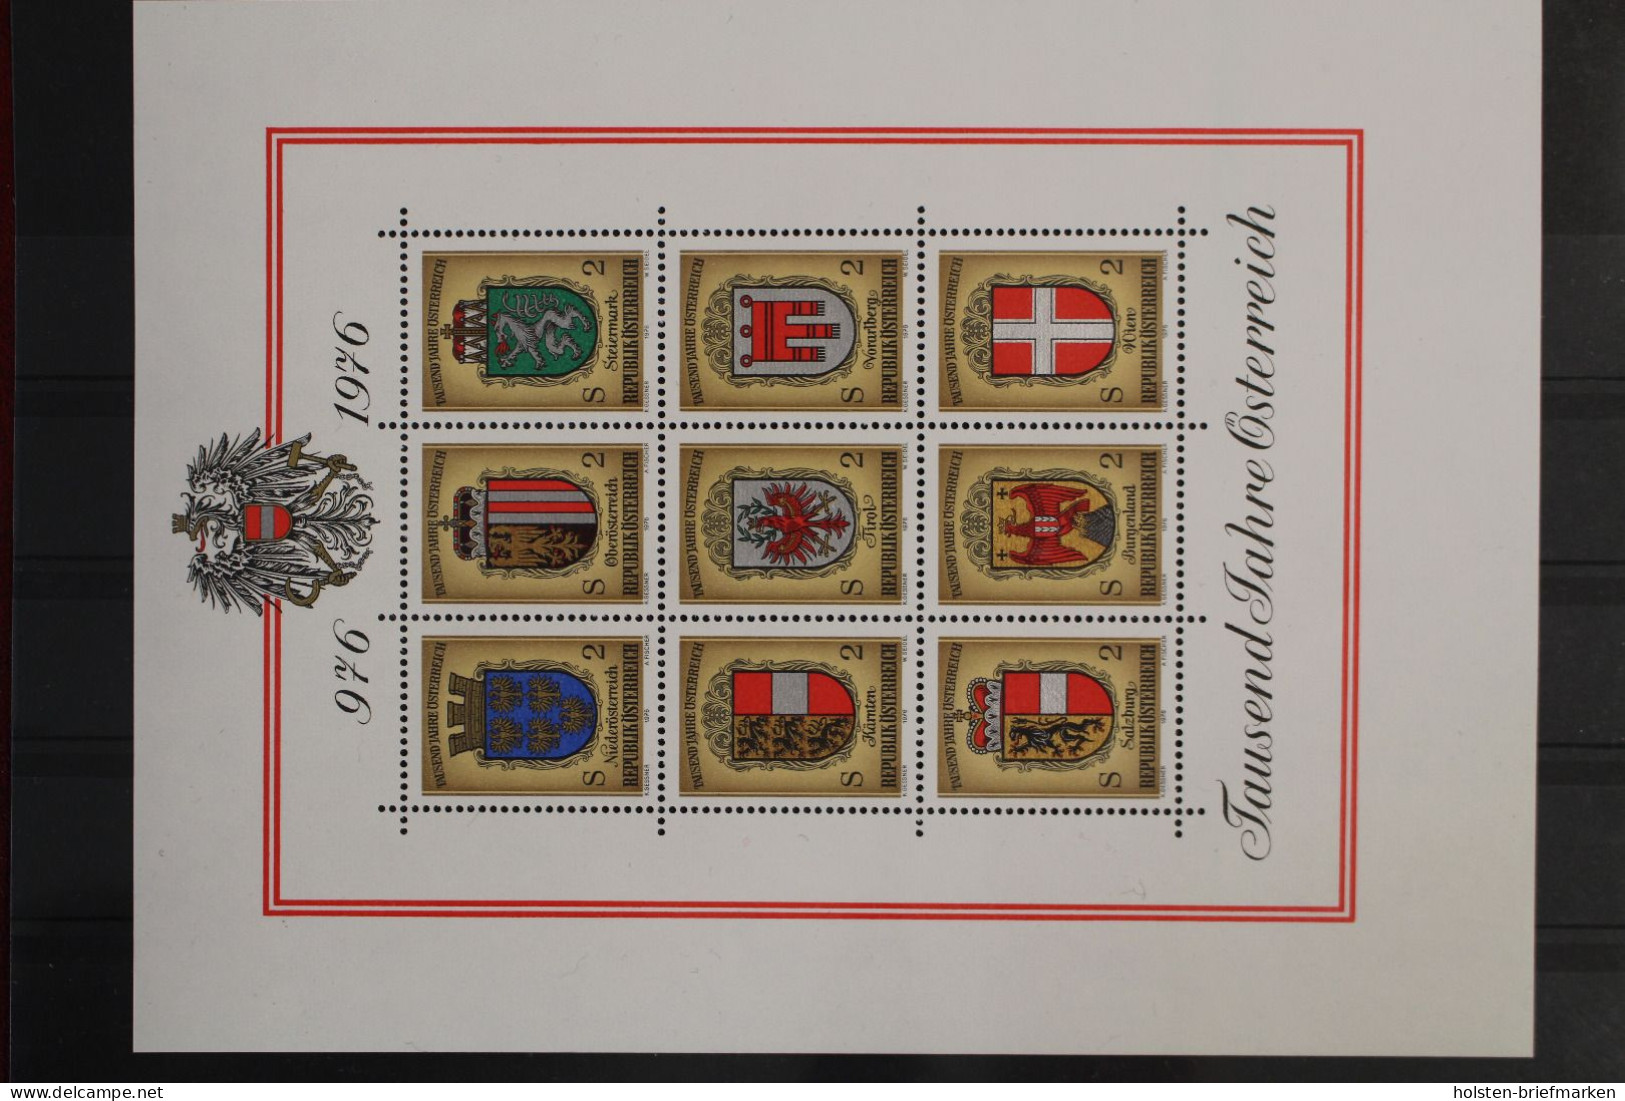 Österreich, MiNr. 1506-1539, Jahrgang 1976, Postfrisch - Ganze Jahrgänge